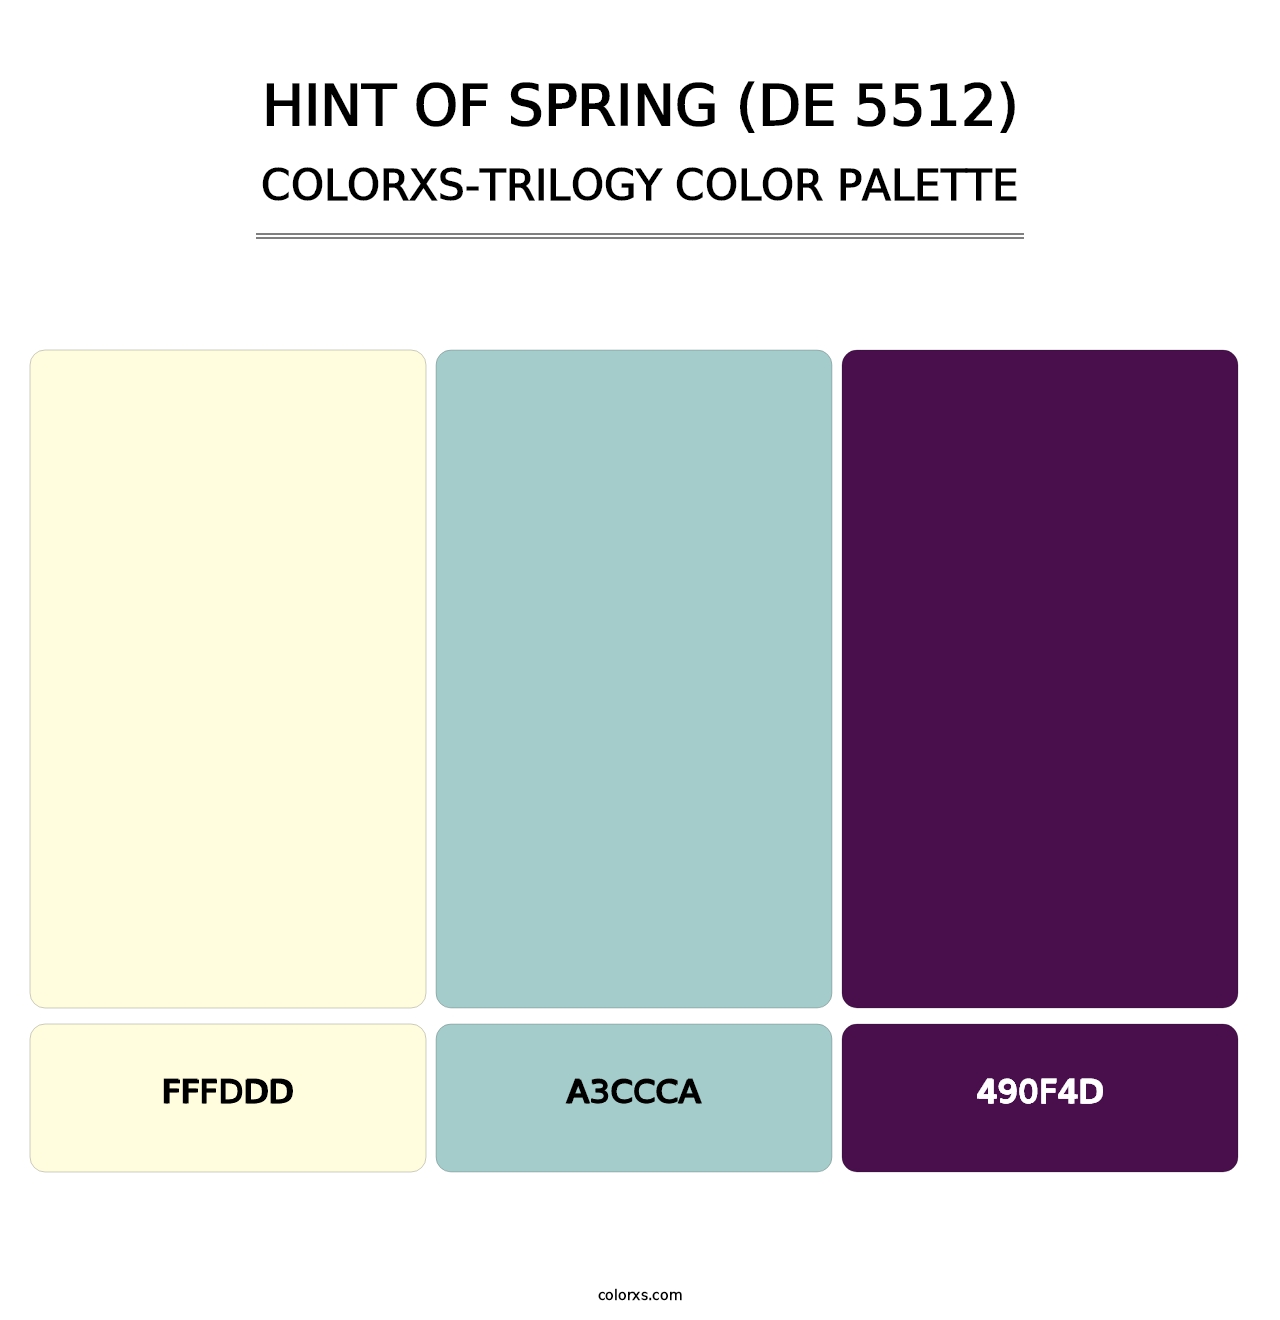 Hint of Spring (DE 5512) - Colorxs Trilogy Palette